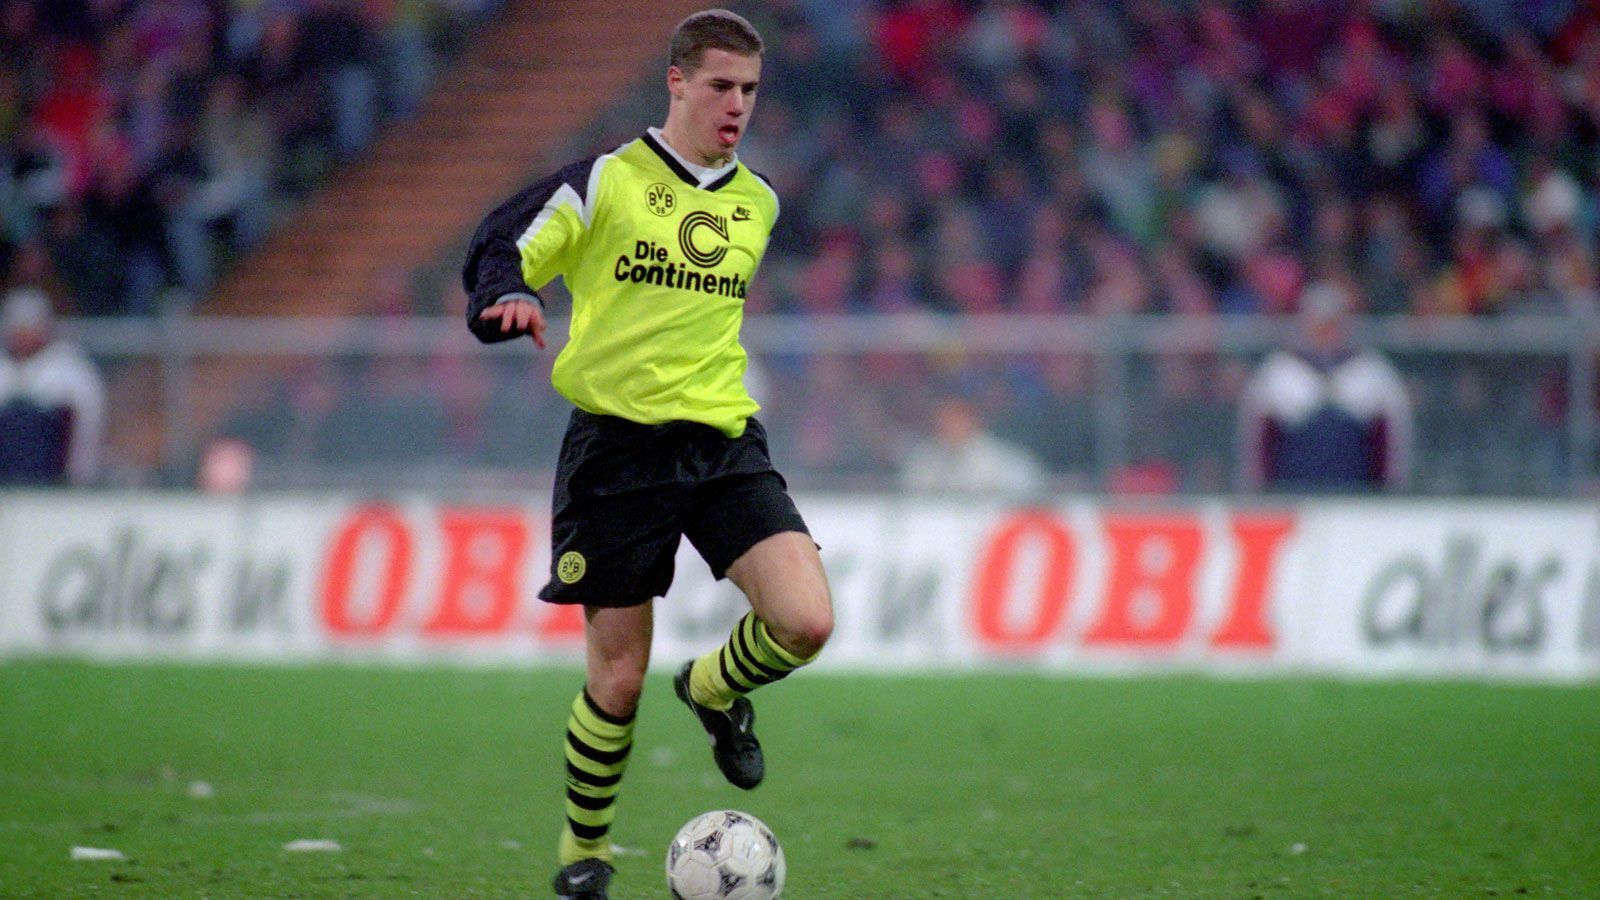 
                <strong>Platz 7: Lars Ricken</strong><br>
                Alter: 19 Jahre, drei Monate und acht TageDamaliger Verein: Borussia DortmundGegner und Endergebnis: 1:0 gegen Steaua Bukarest (95/96)
              